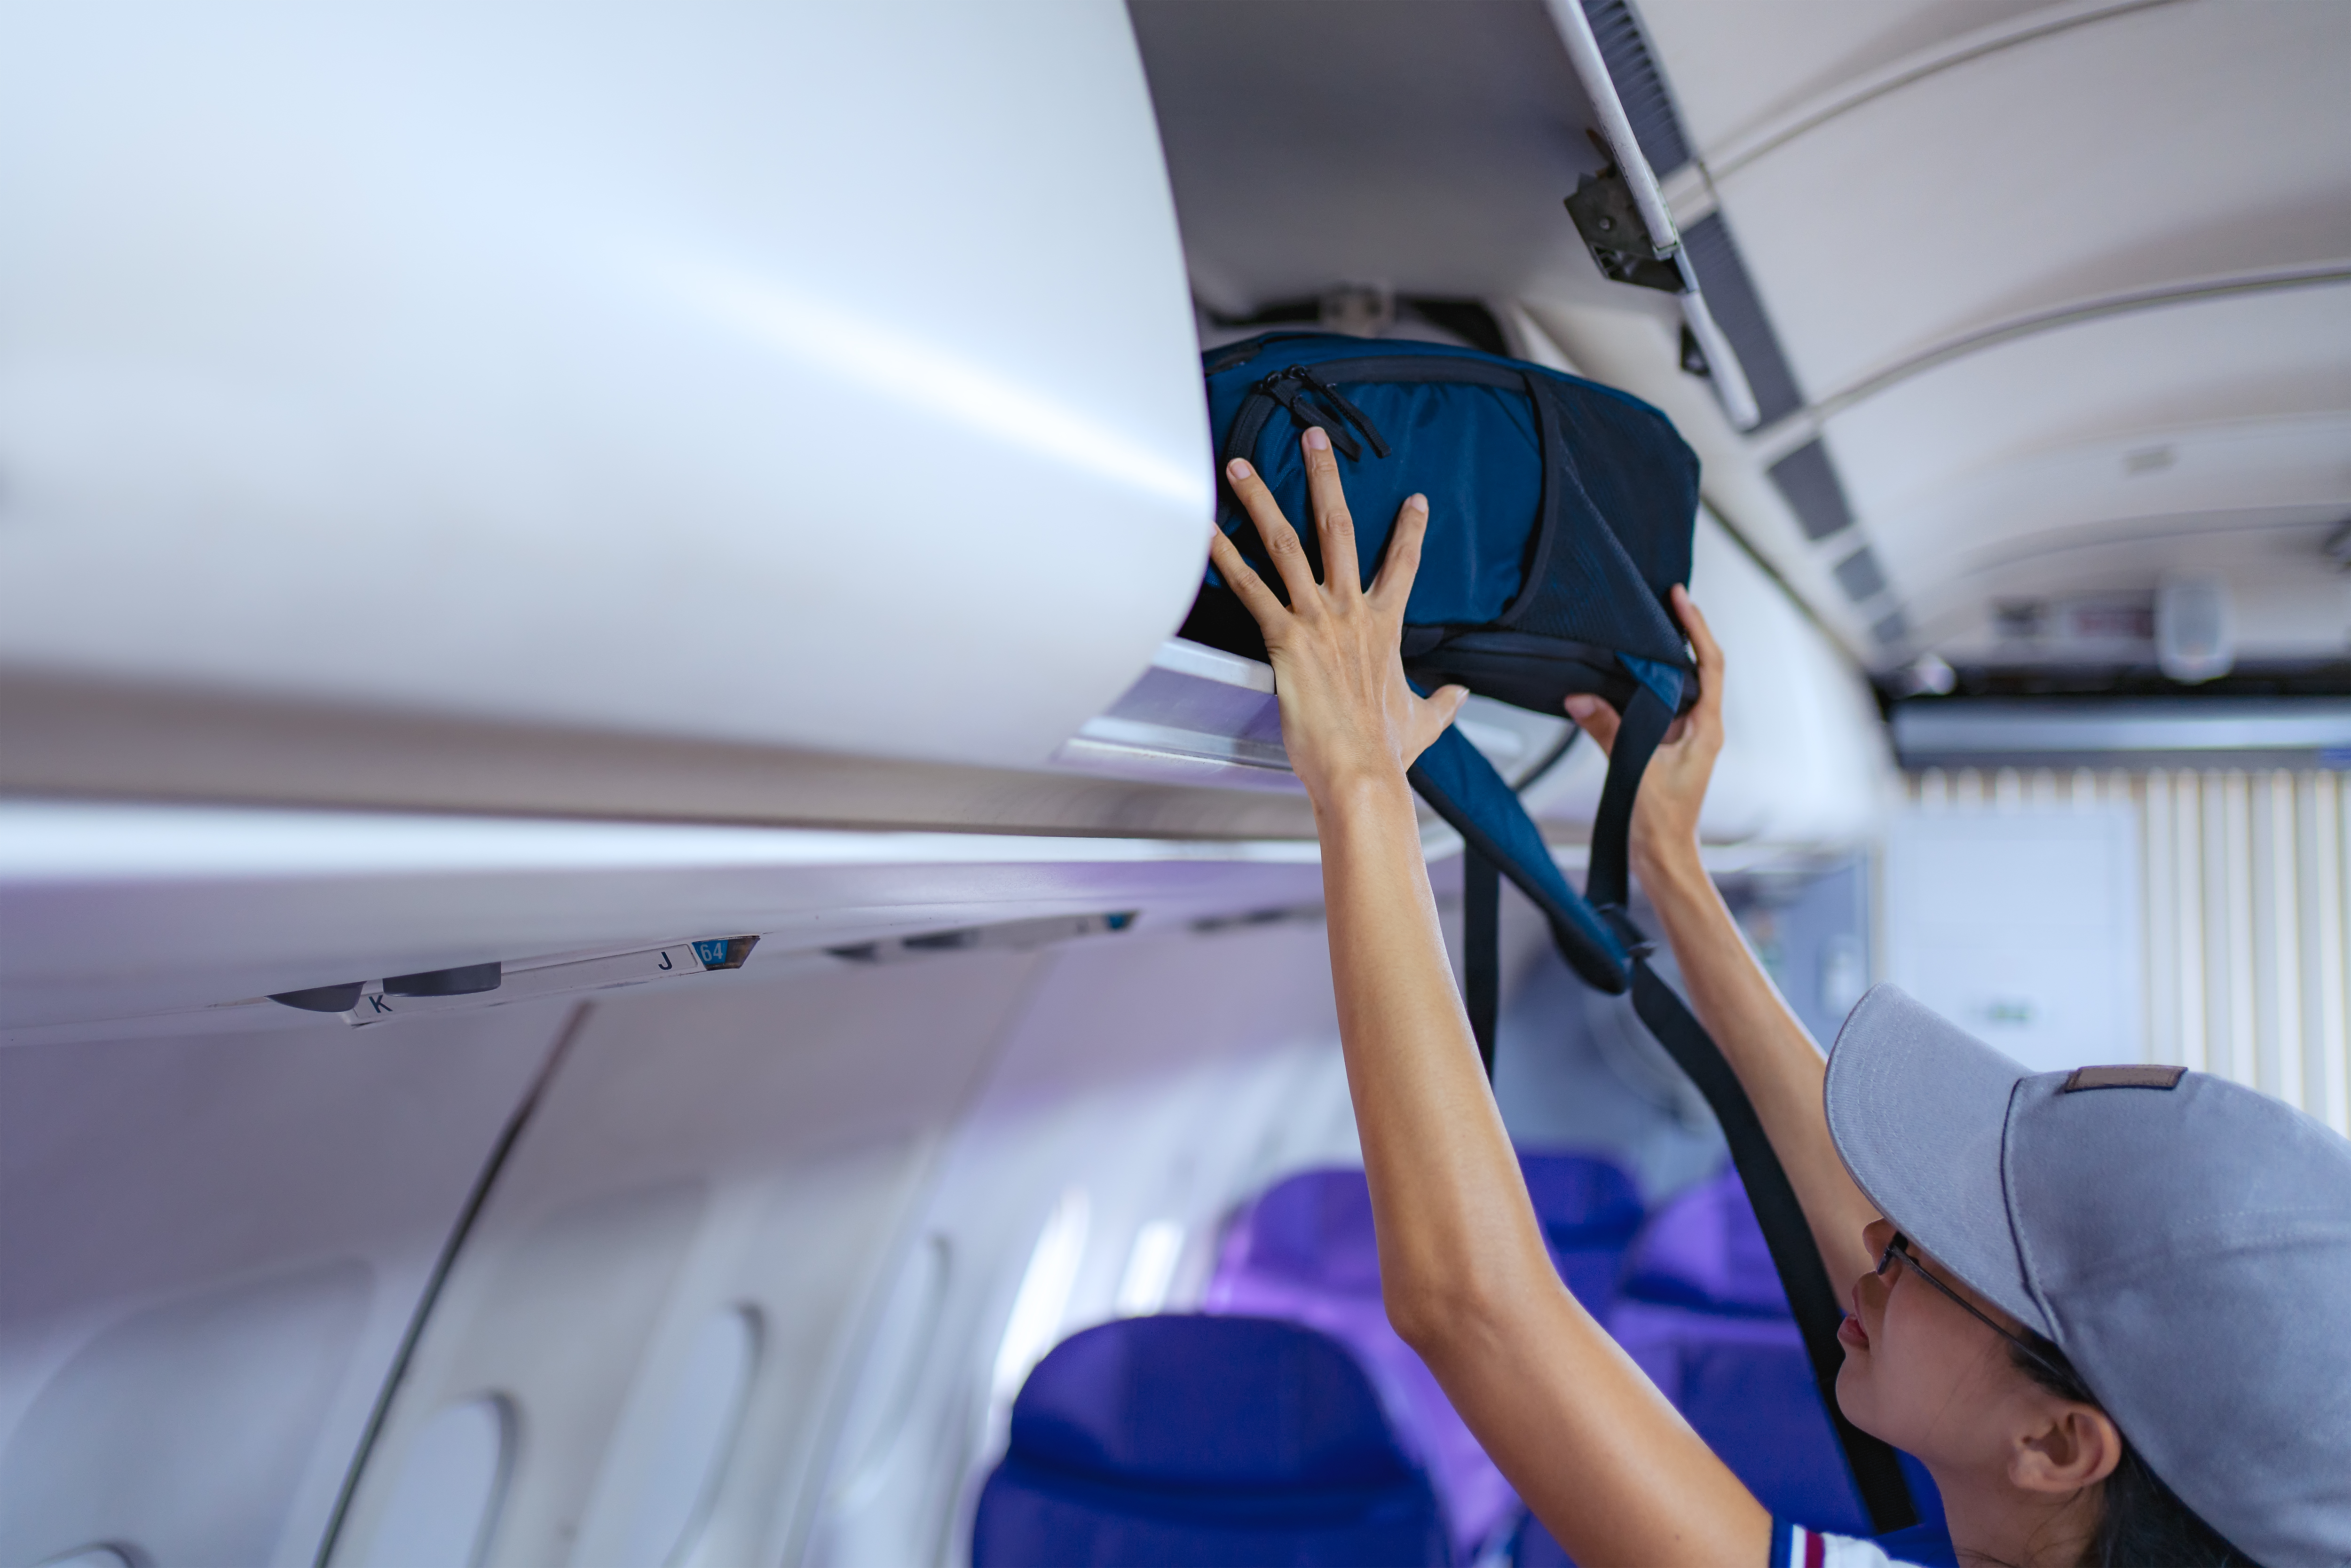 Die meisten Fluggesellschaften verlangen mittlerweile eine Gebühr für die Mitnahme eines kostenlosen Koffers in der Kabine, wenn sie den einfachsten Flugpreis buchen